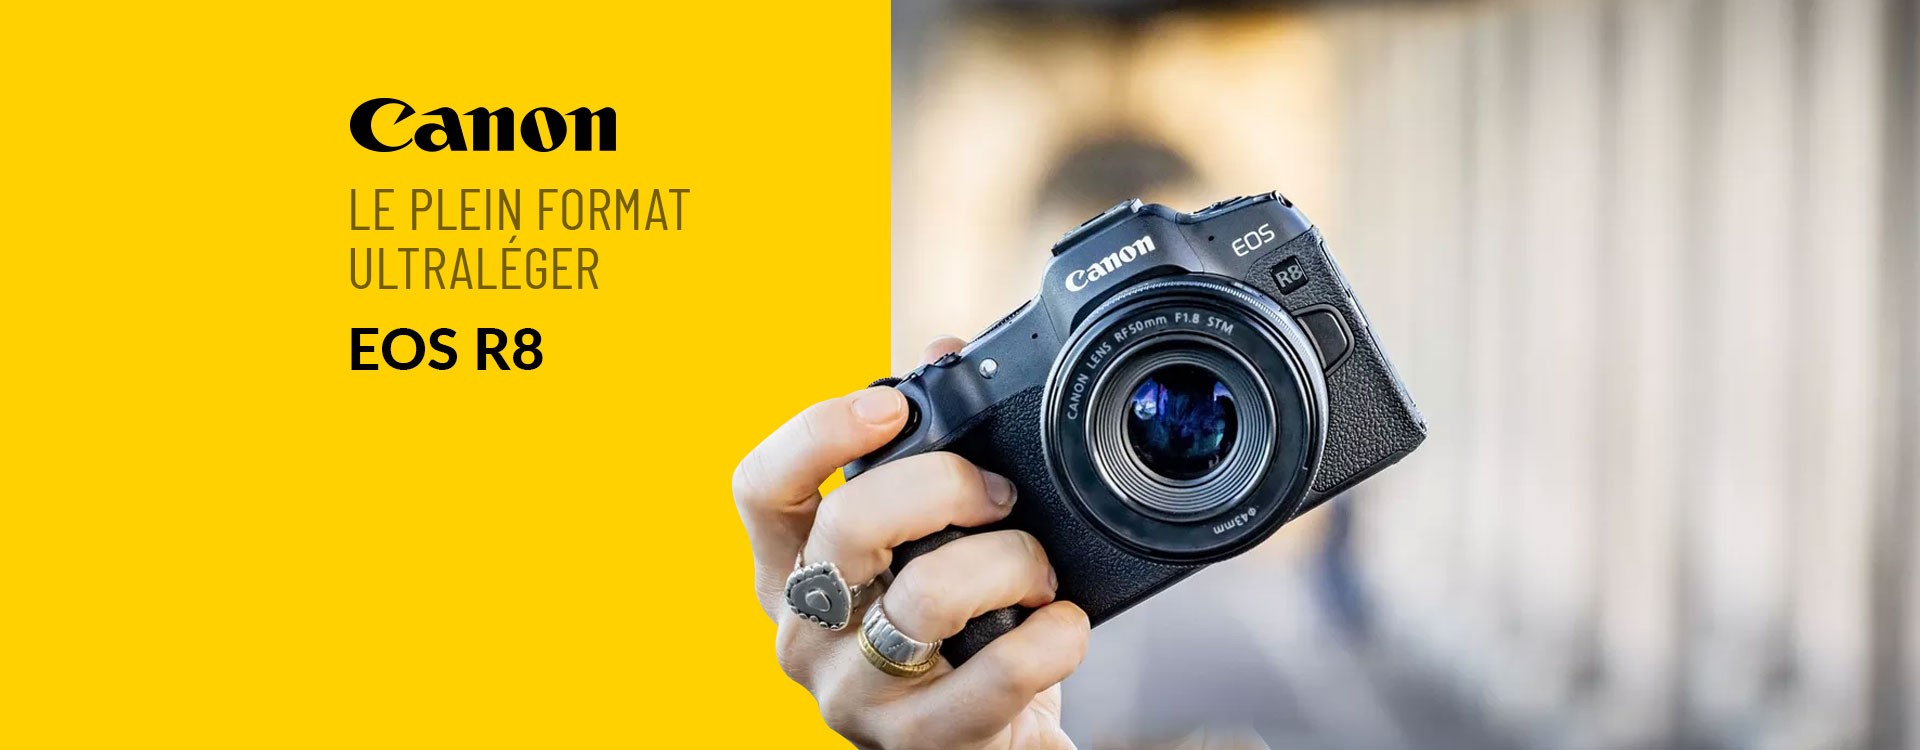 Le plein format ultraléger: Canon annonce l’EOS R8, l’appareil plein format le plus compact du système EOS R